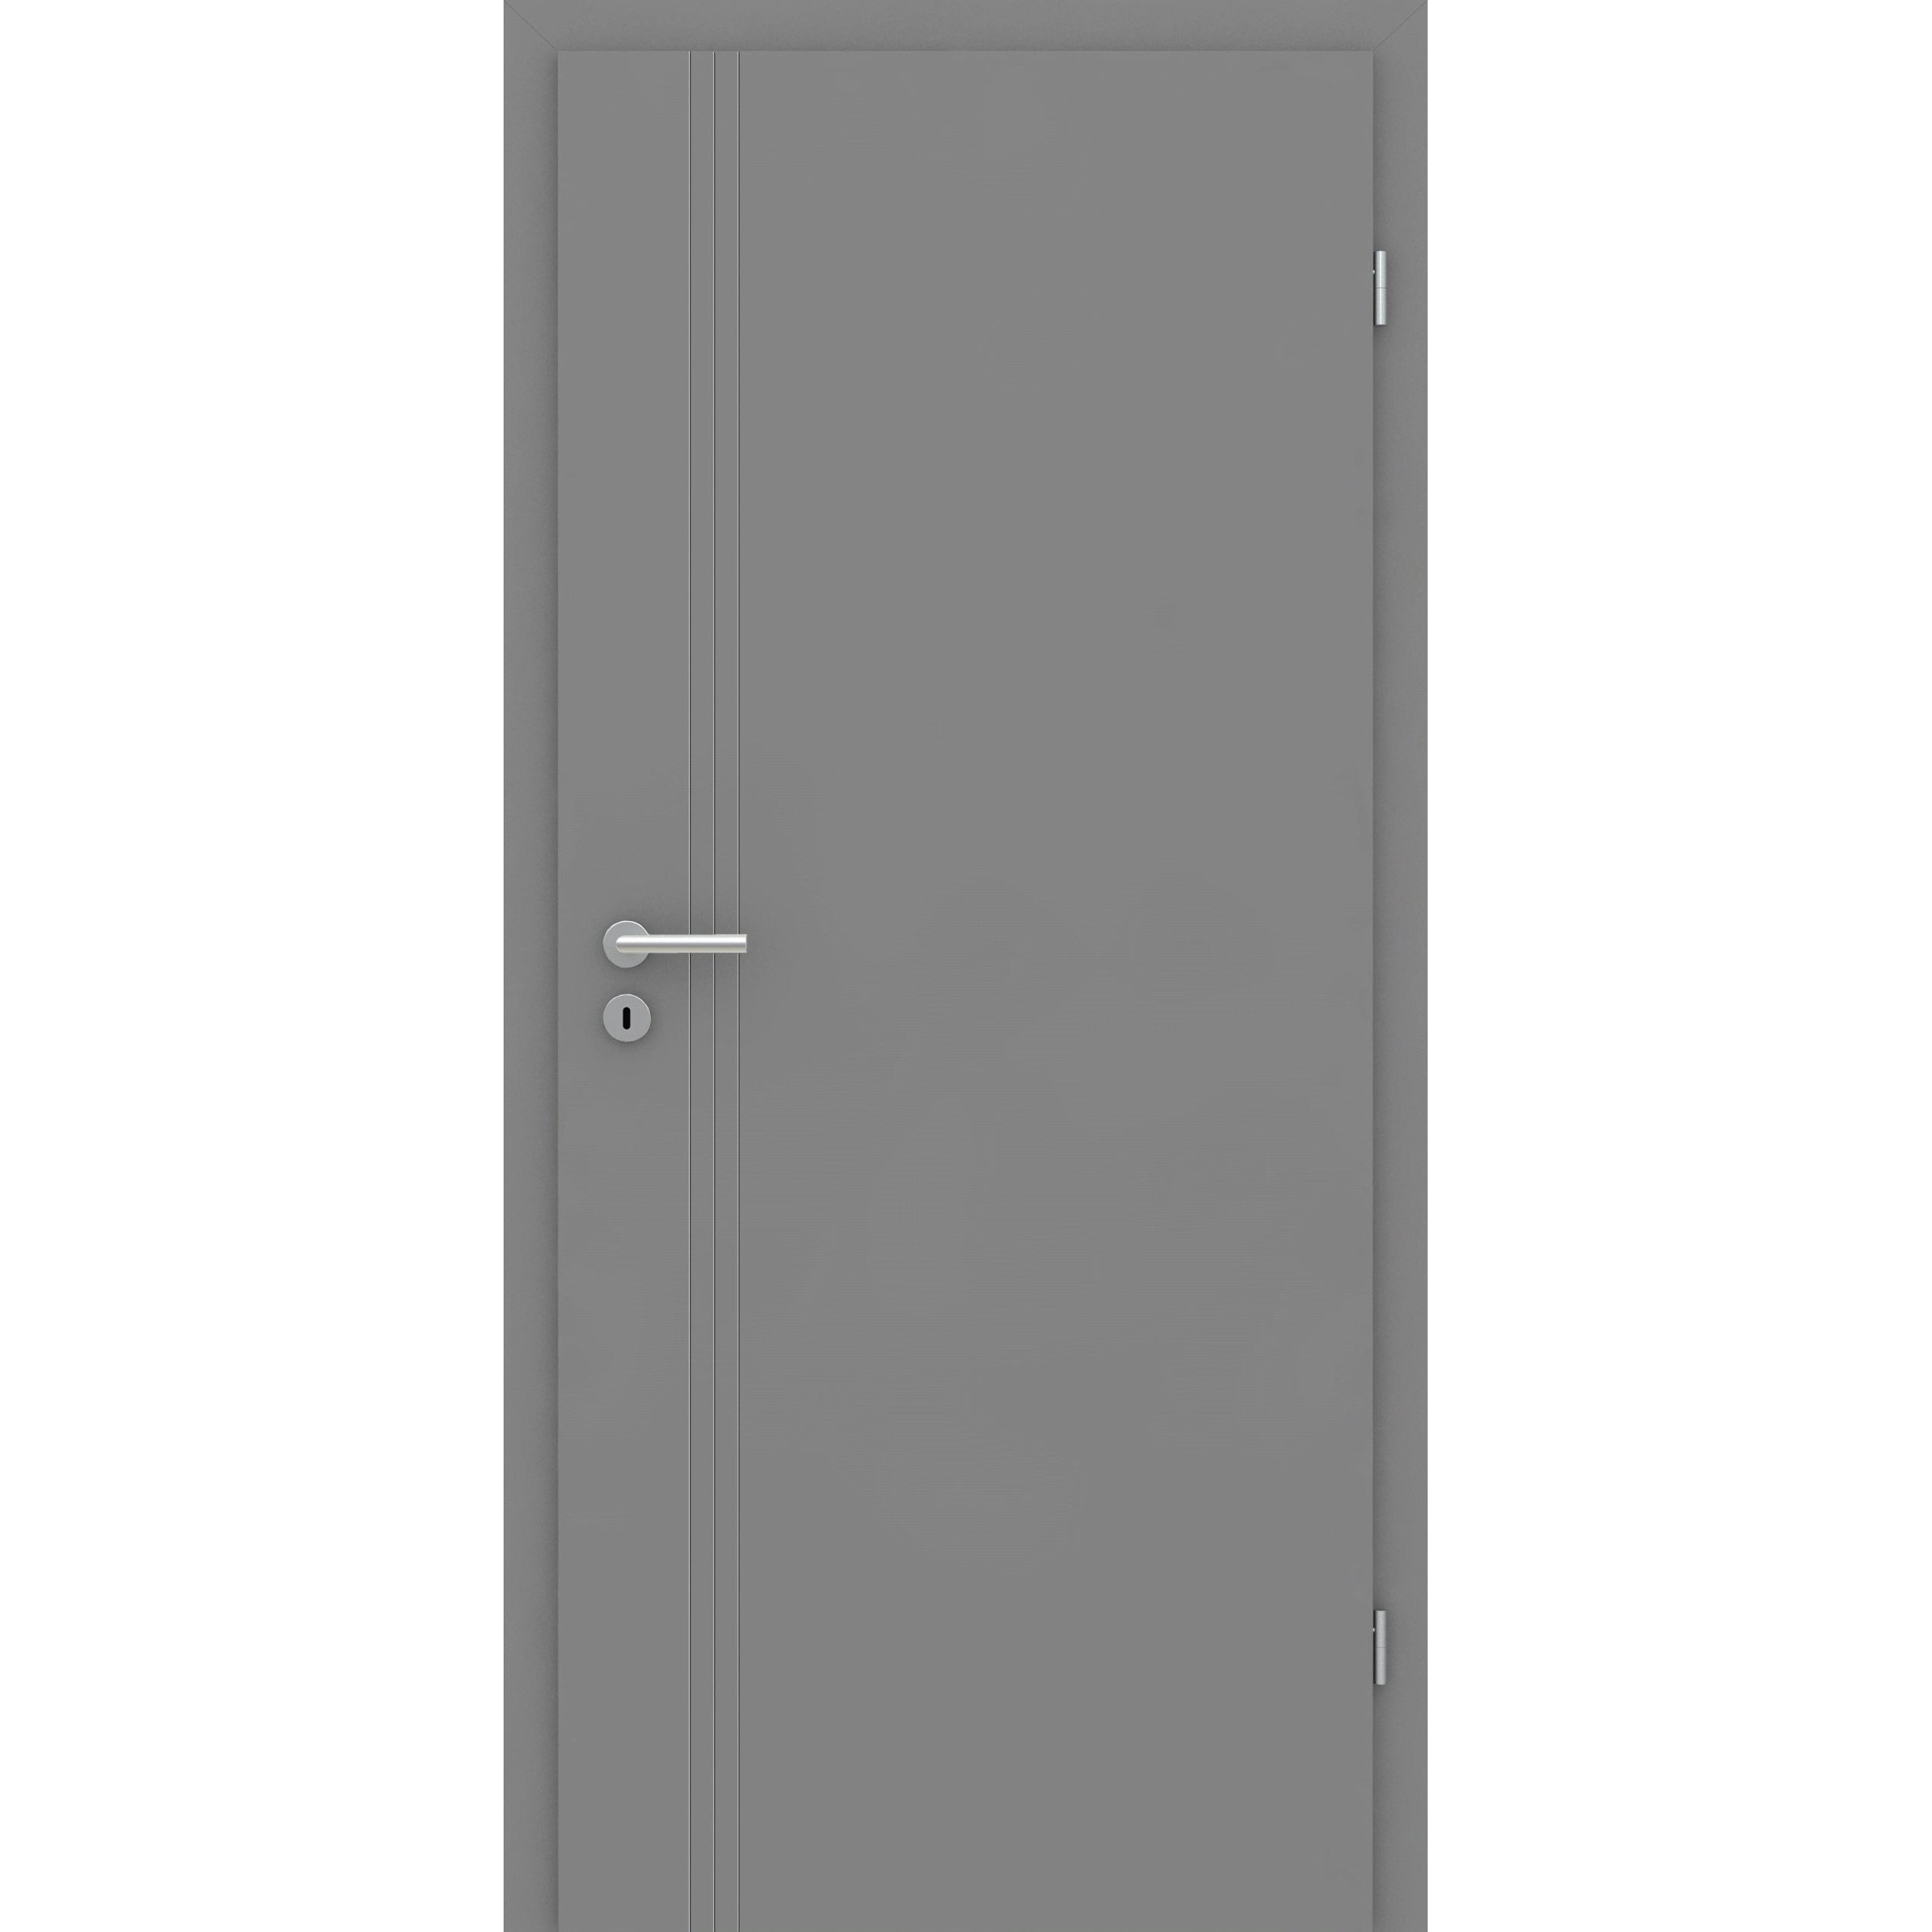 Wohnungseingangstür mit Zarge grau 3 Rillen aufrecht Schlosseite Designkante SK2 / KK3 - Modell Designtür VS37